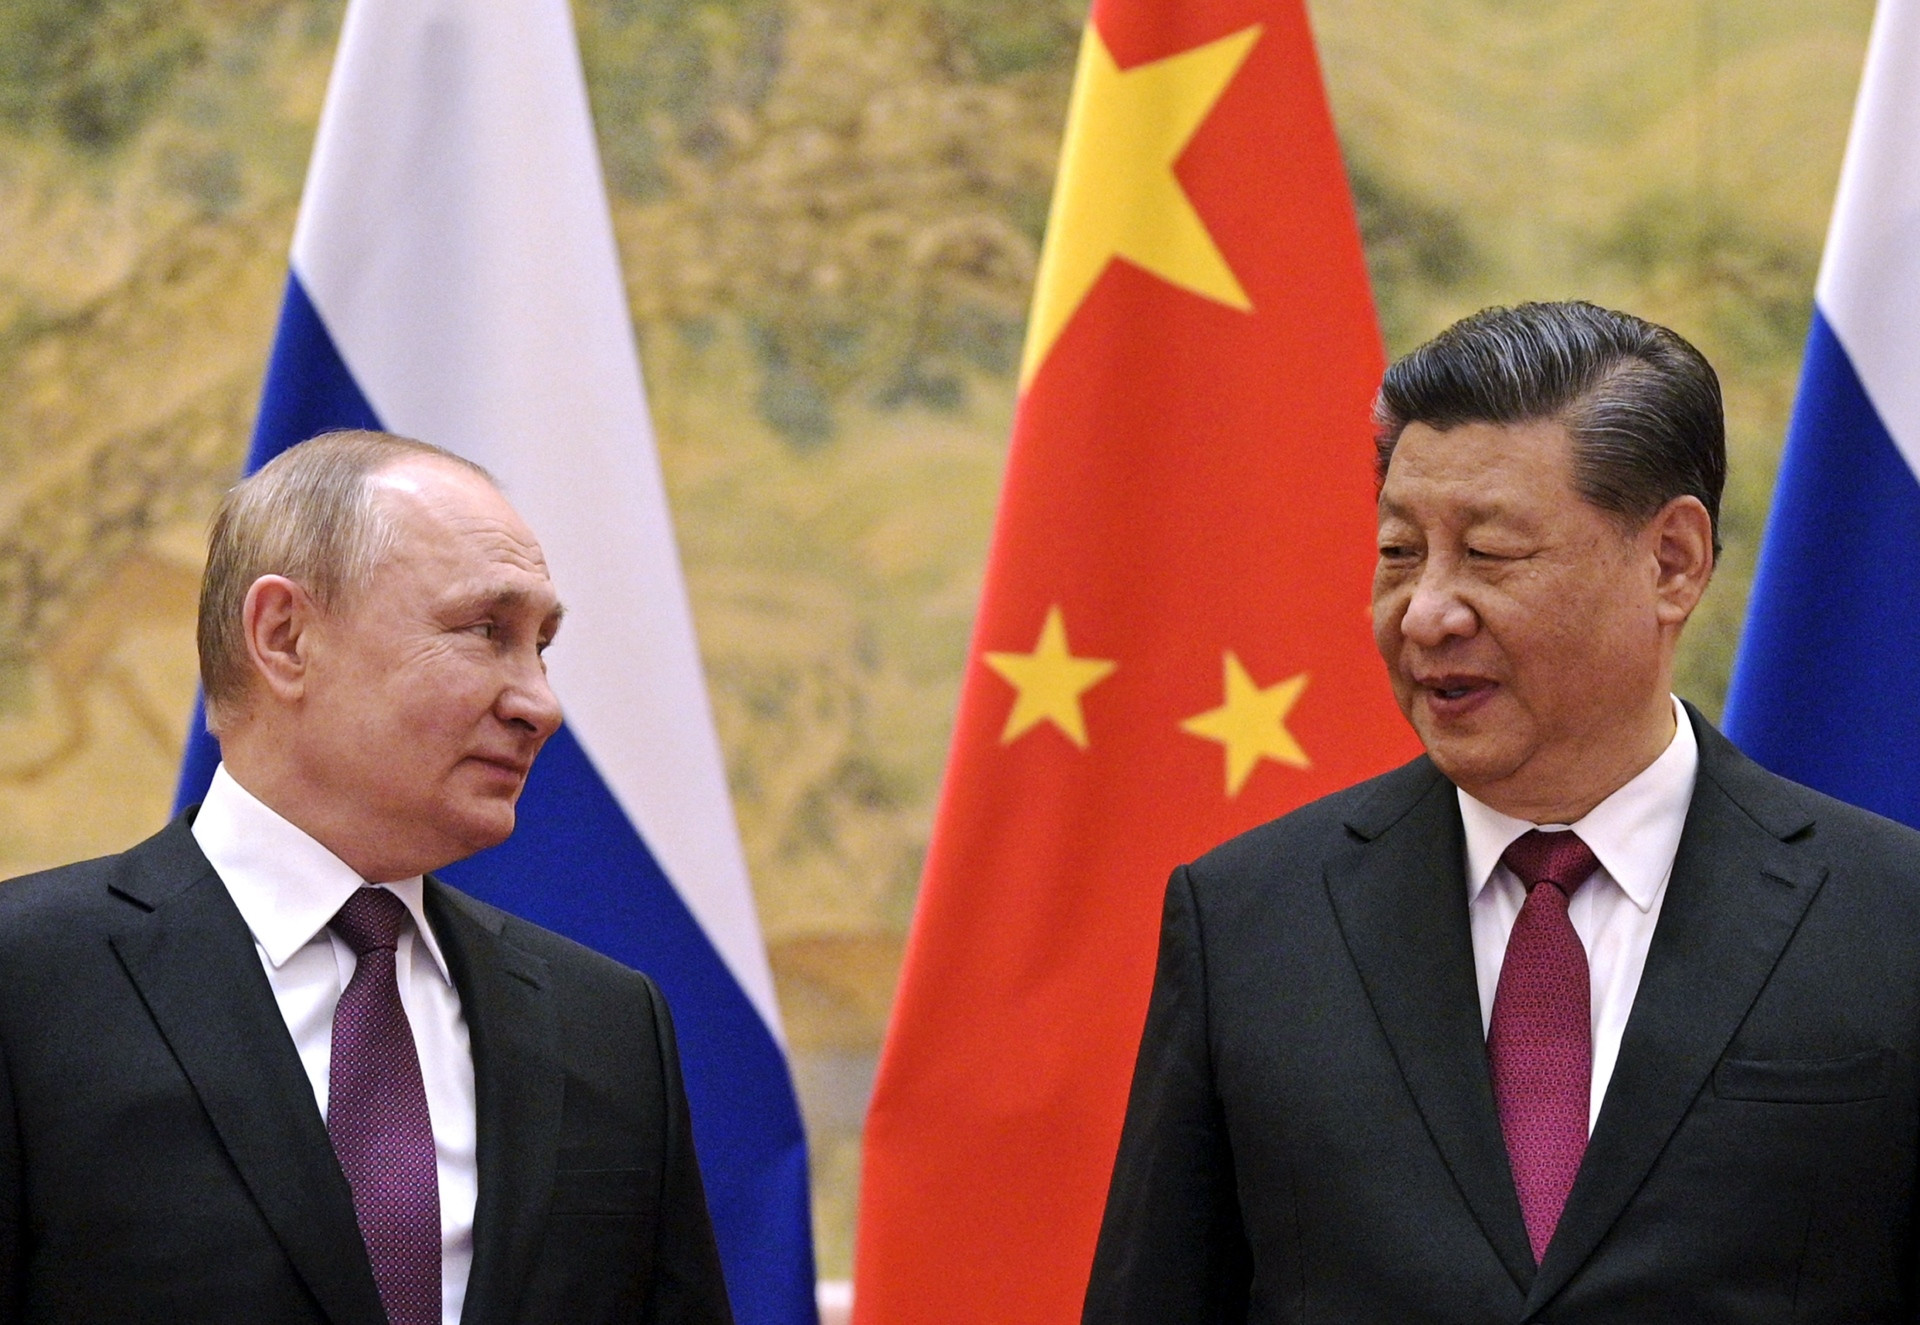 Cục diện thế giới ra sao khi quan hệ Nga - Trung ngày càng thắt chặt? - 2